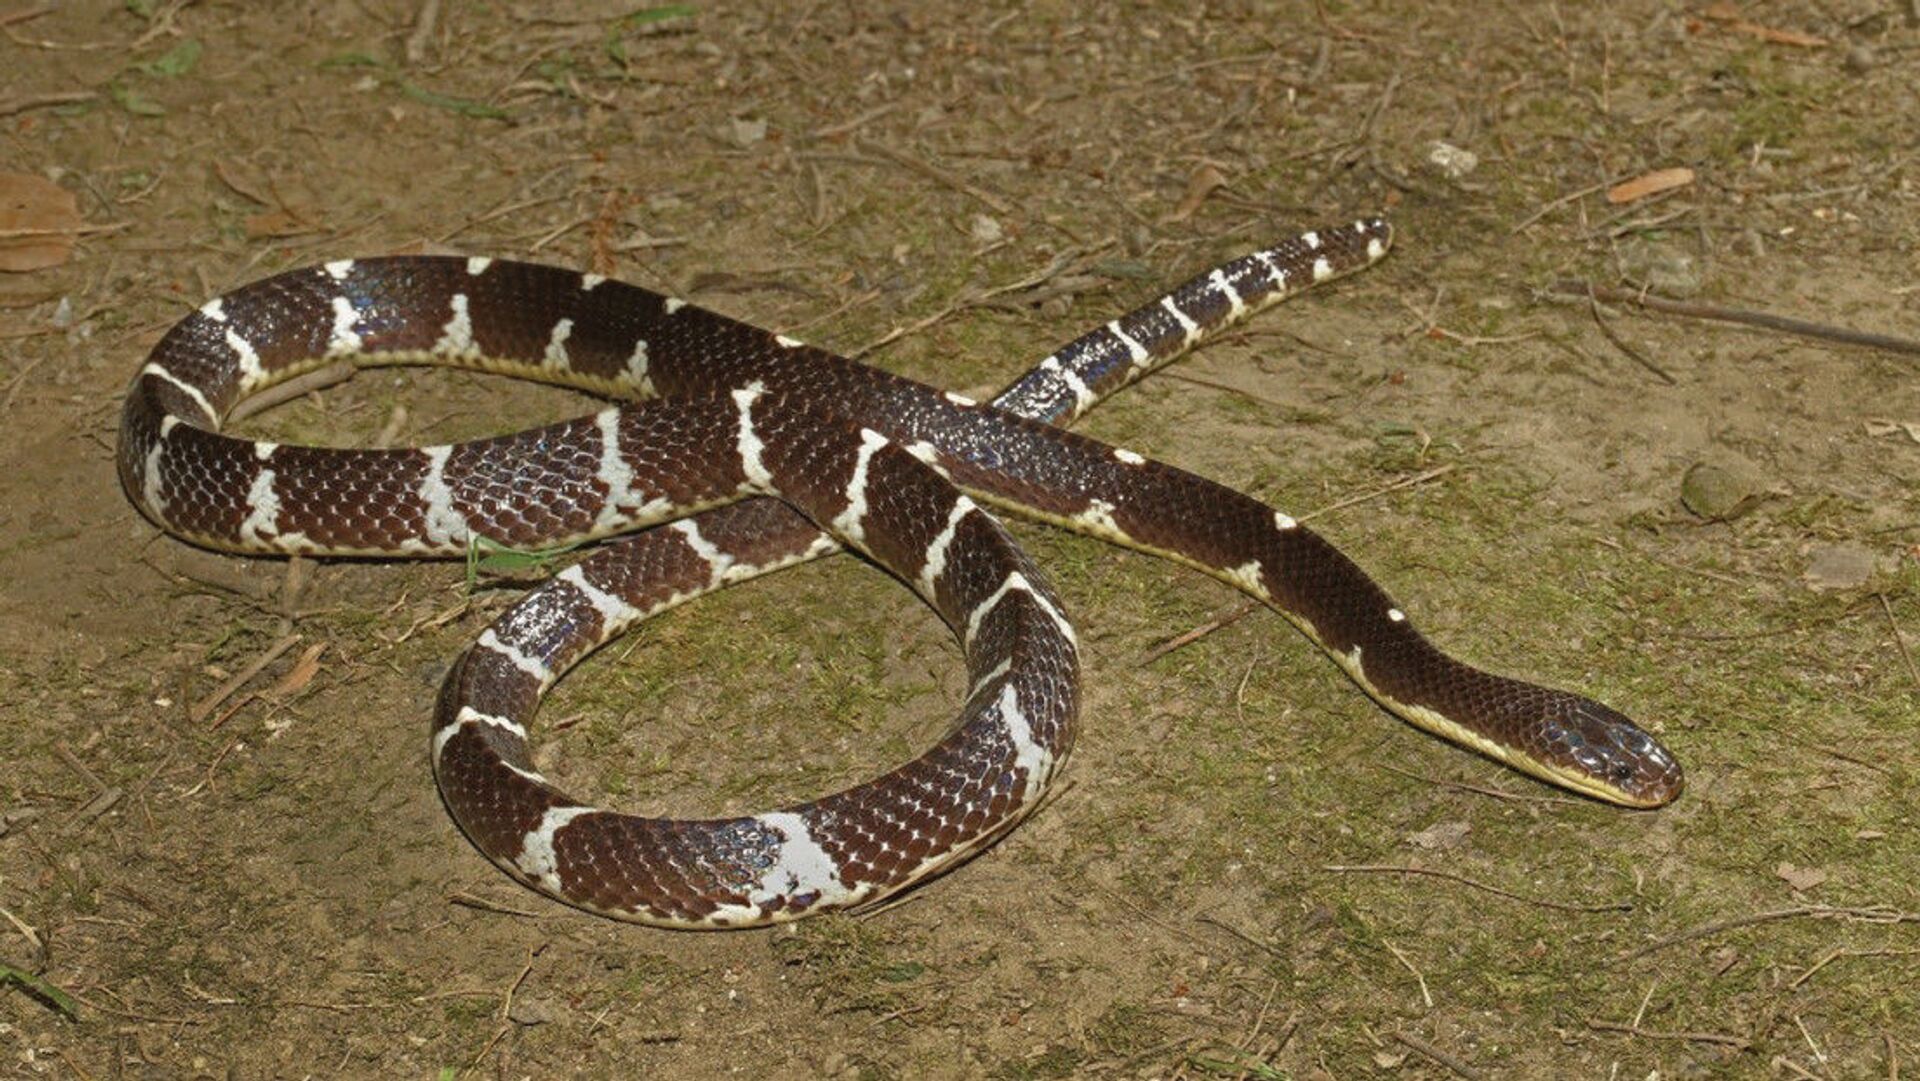 Nova espécie de serpente altamente venenosa é descoberta na China (FOTO) - Sputnik Brasil, 1920, 07.04.2021